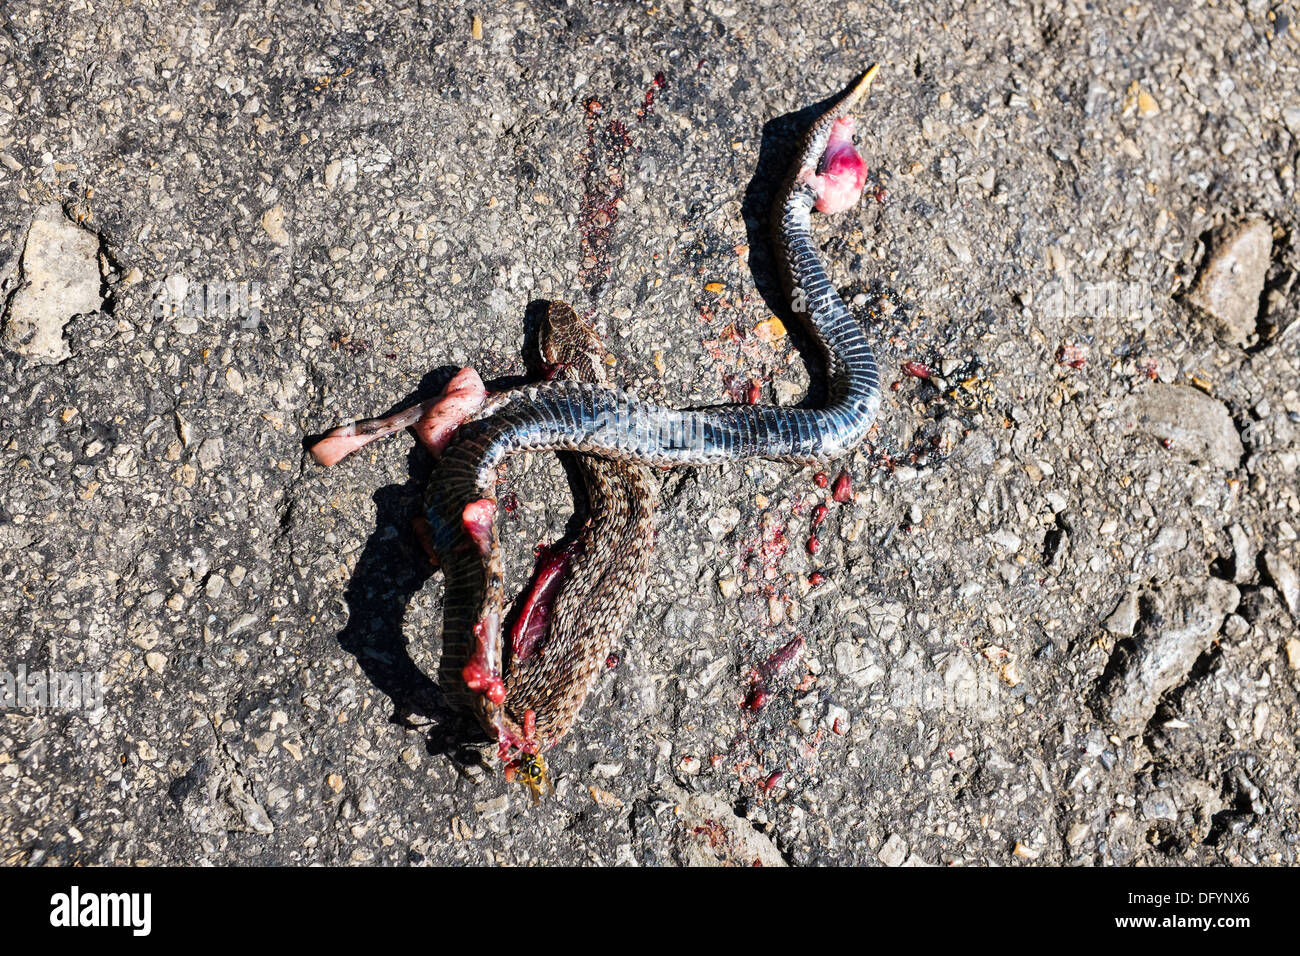 Dead viper, roadkill Stock Photo